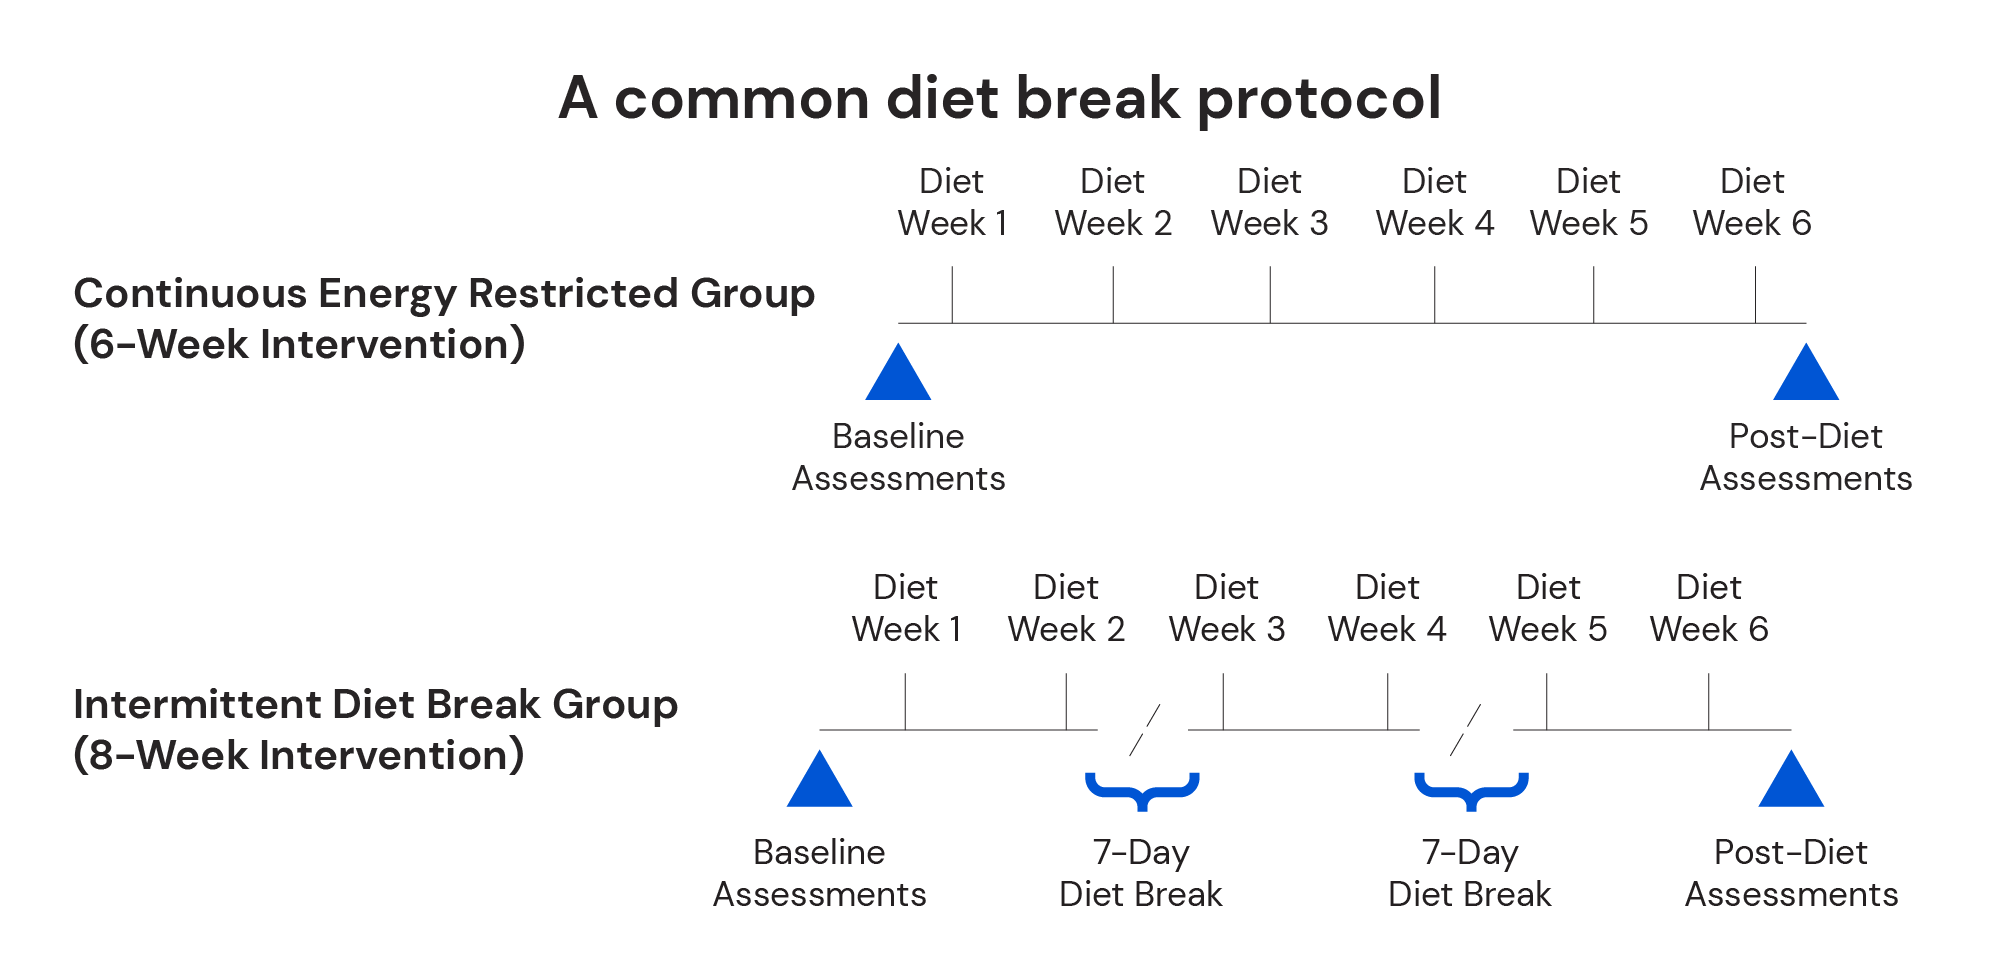 A common diet break protocol